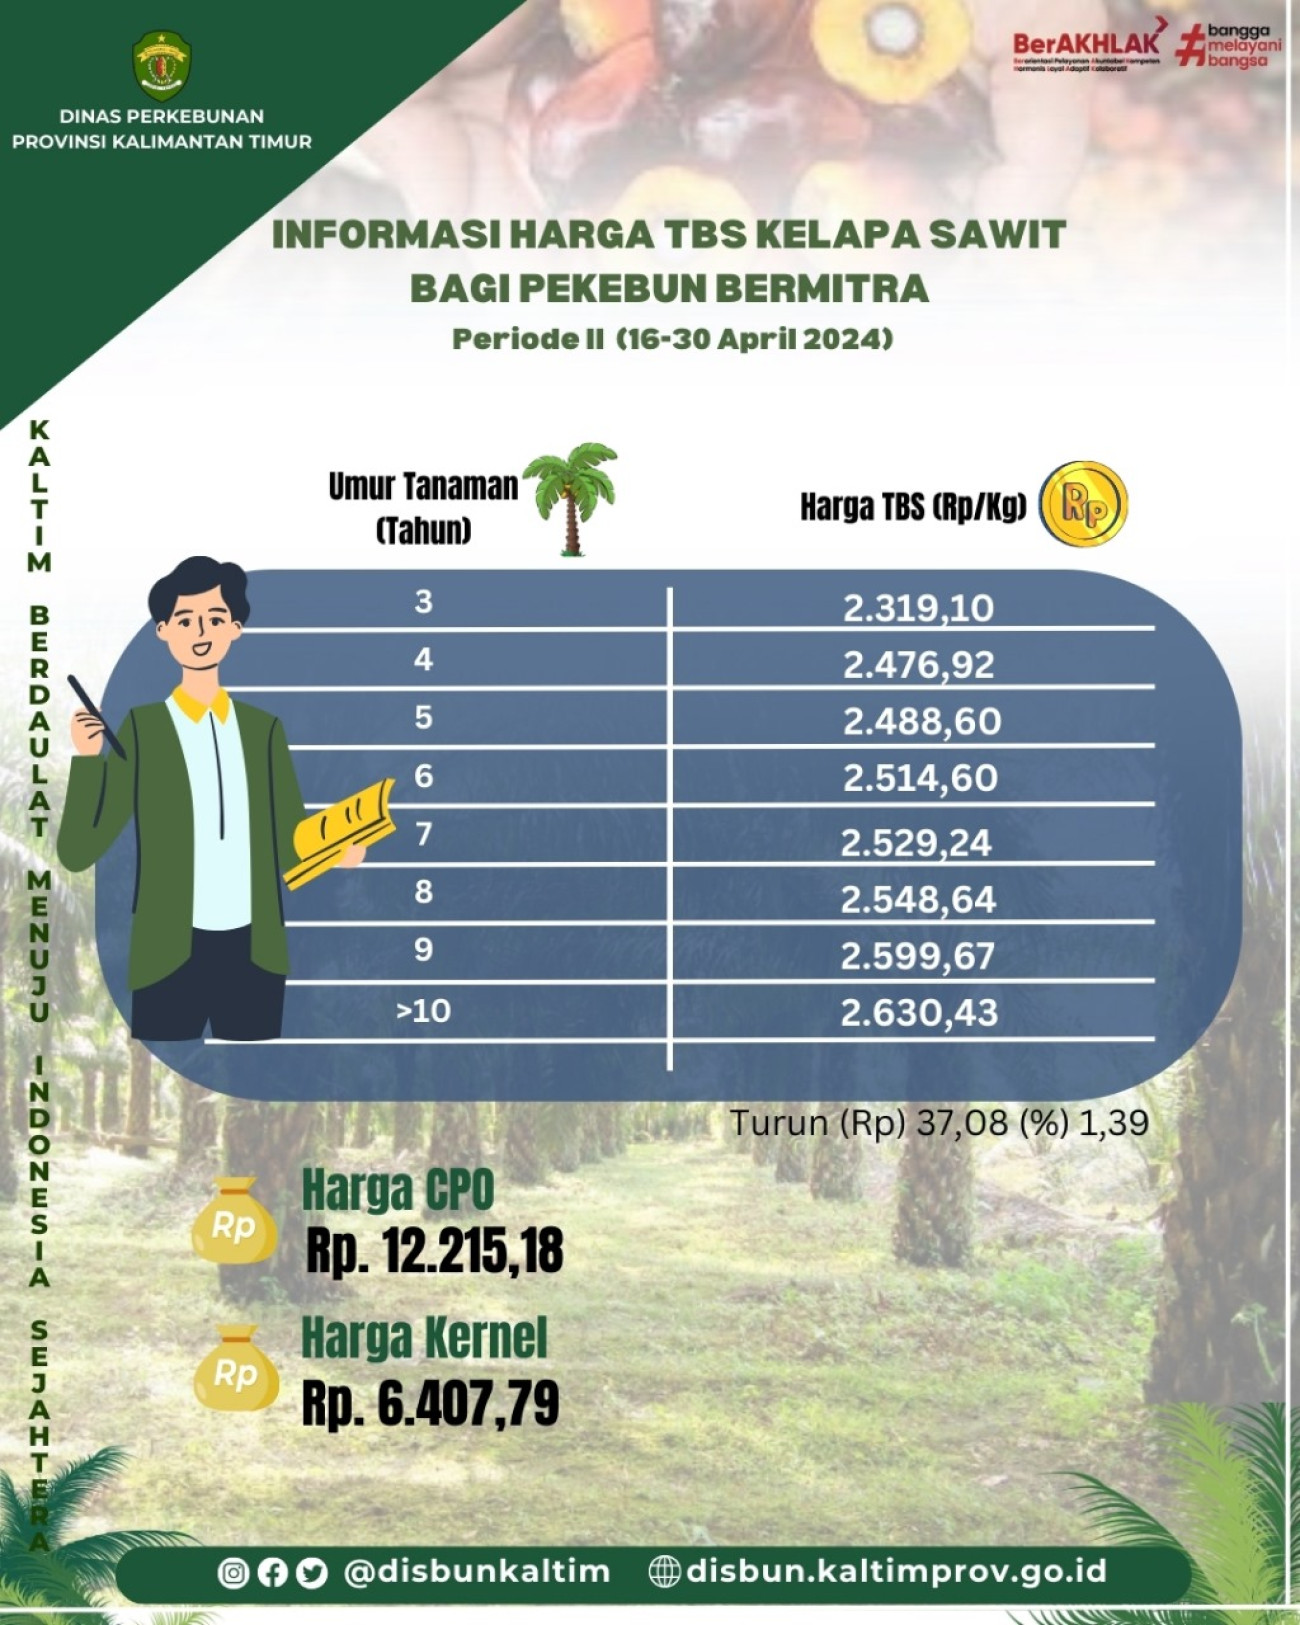 Informasi Harga TBS Kelapa Sawit bagi Pekebun Mitra Periode II Bulan April 2024